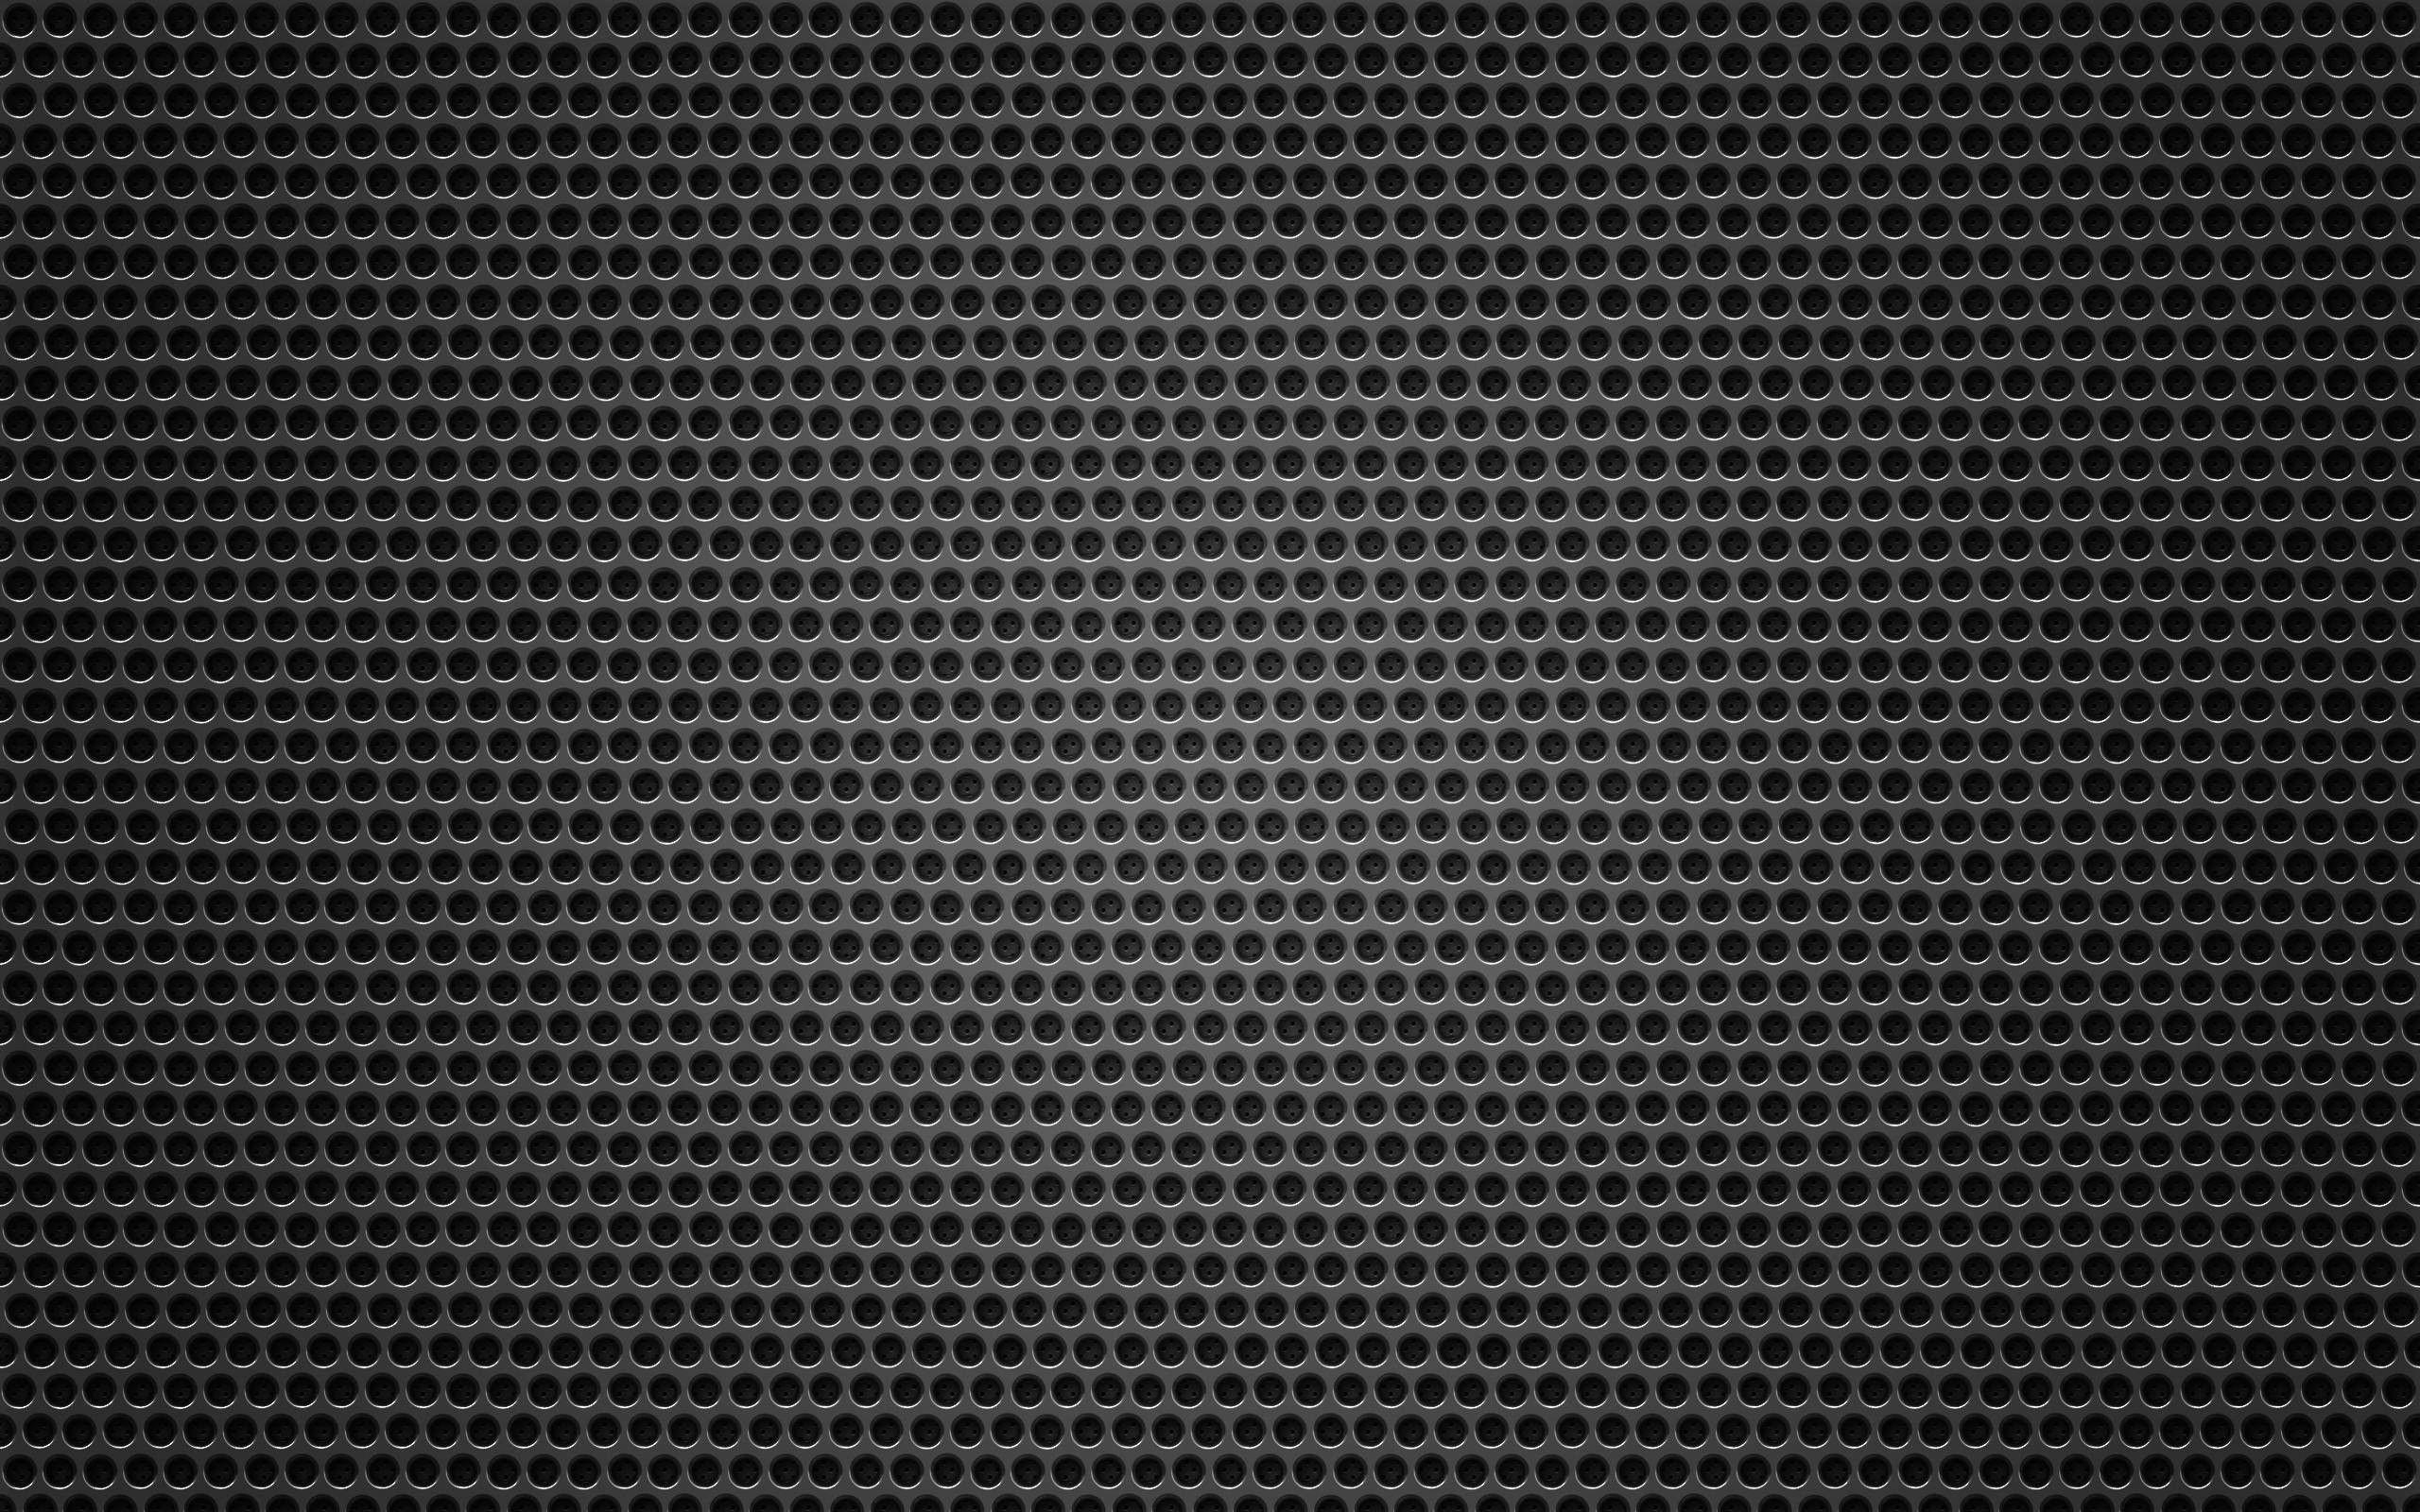 HD Carbon Fiber Wallpaper